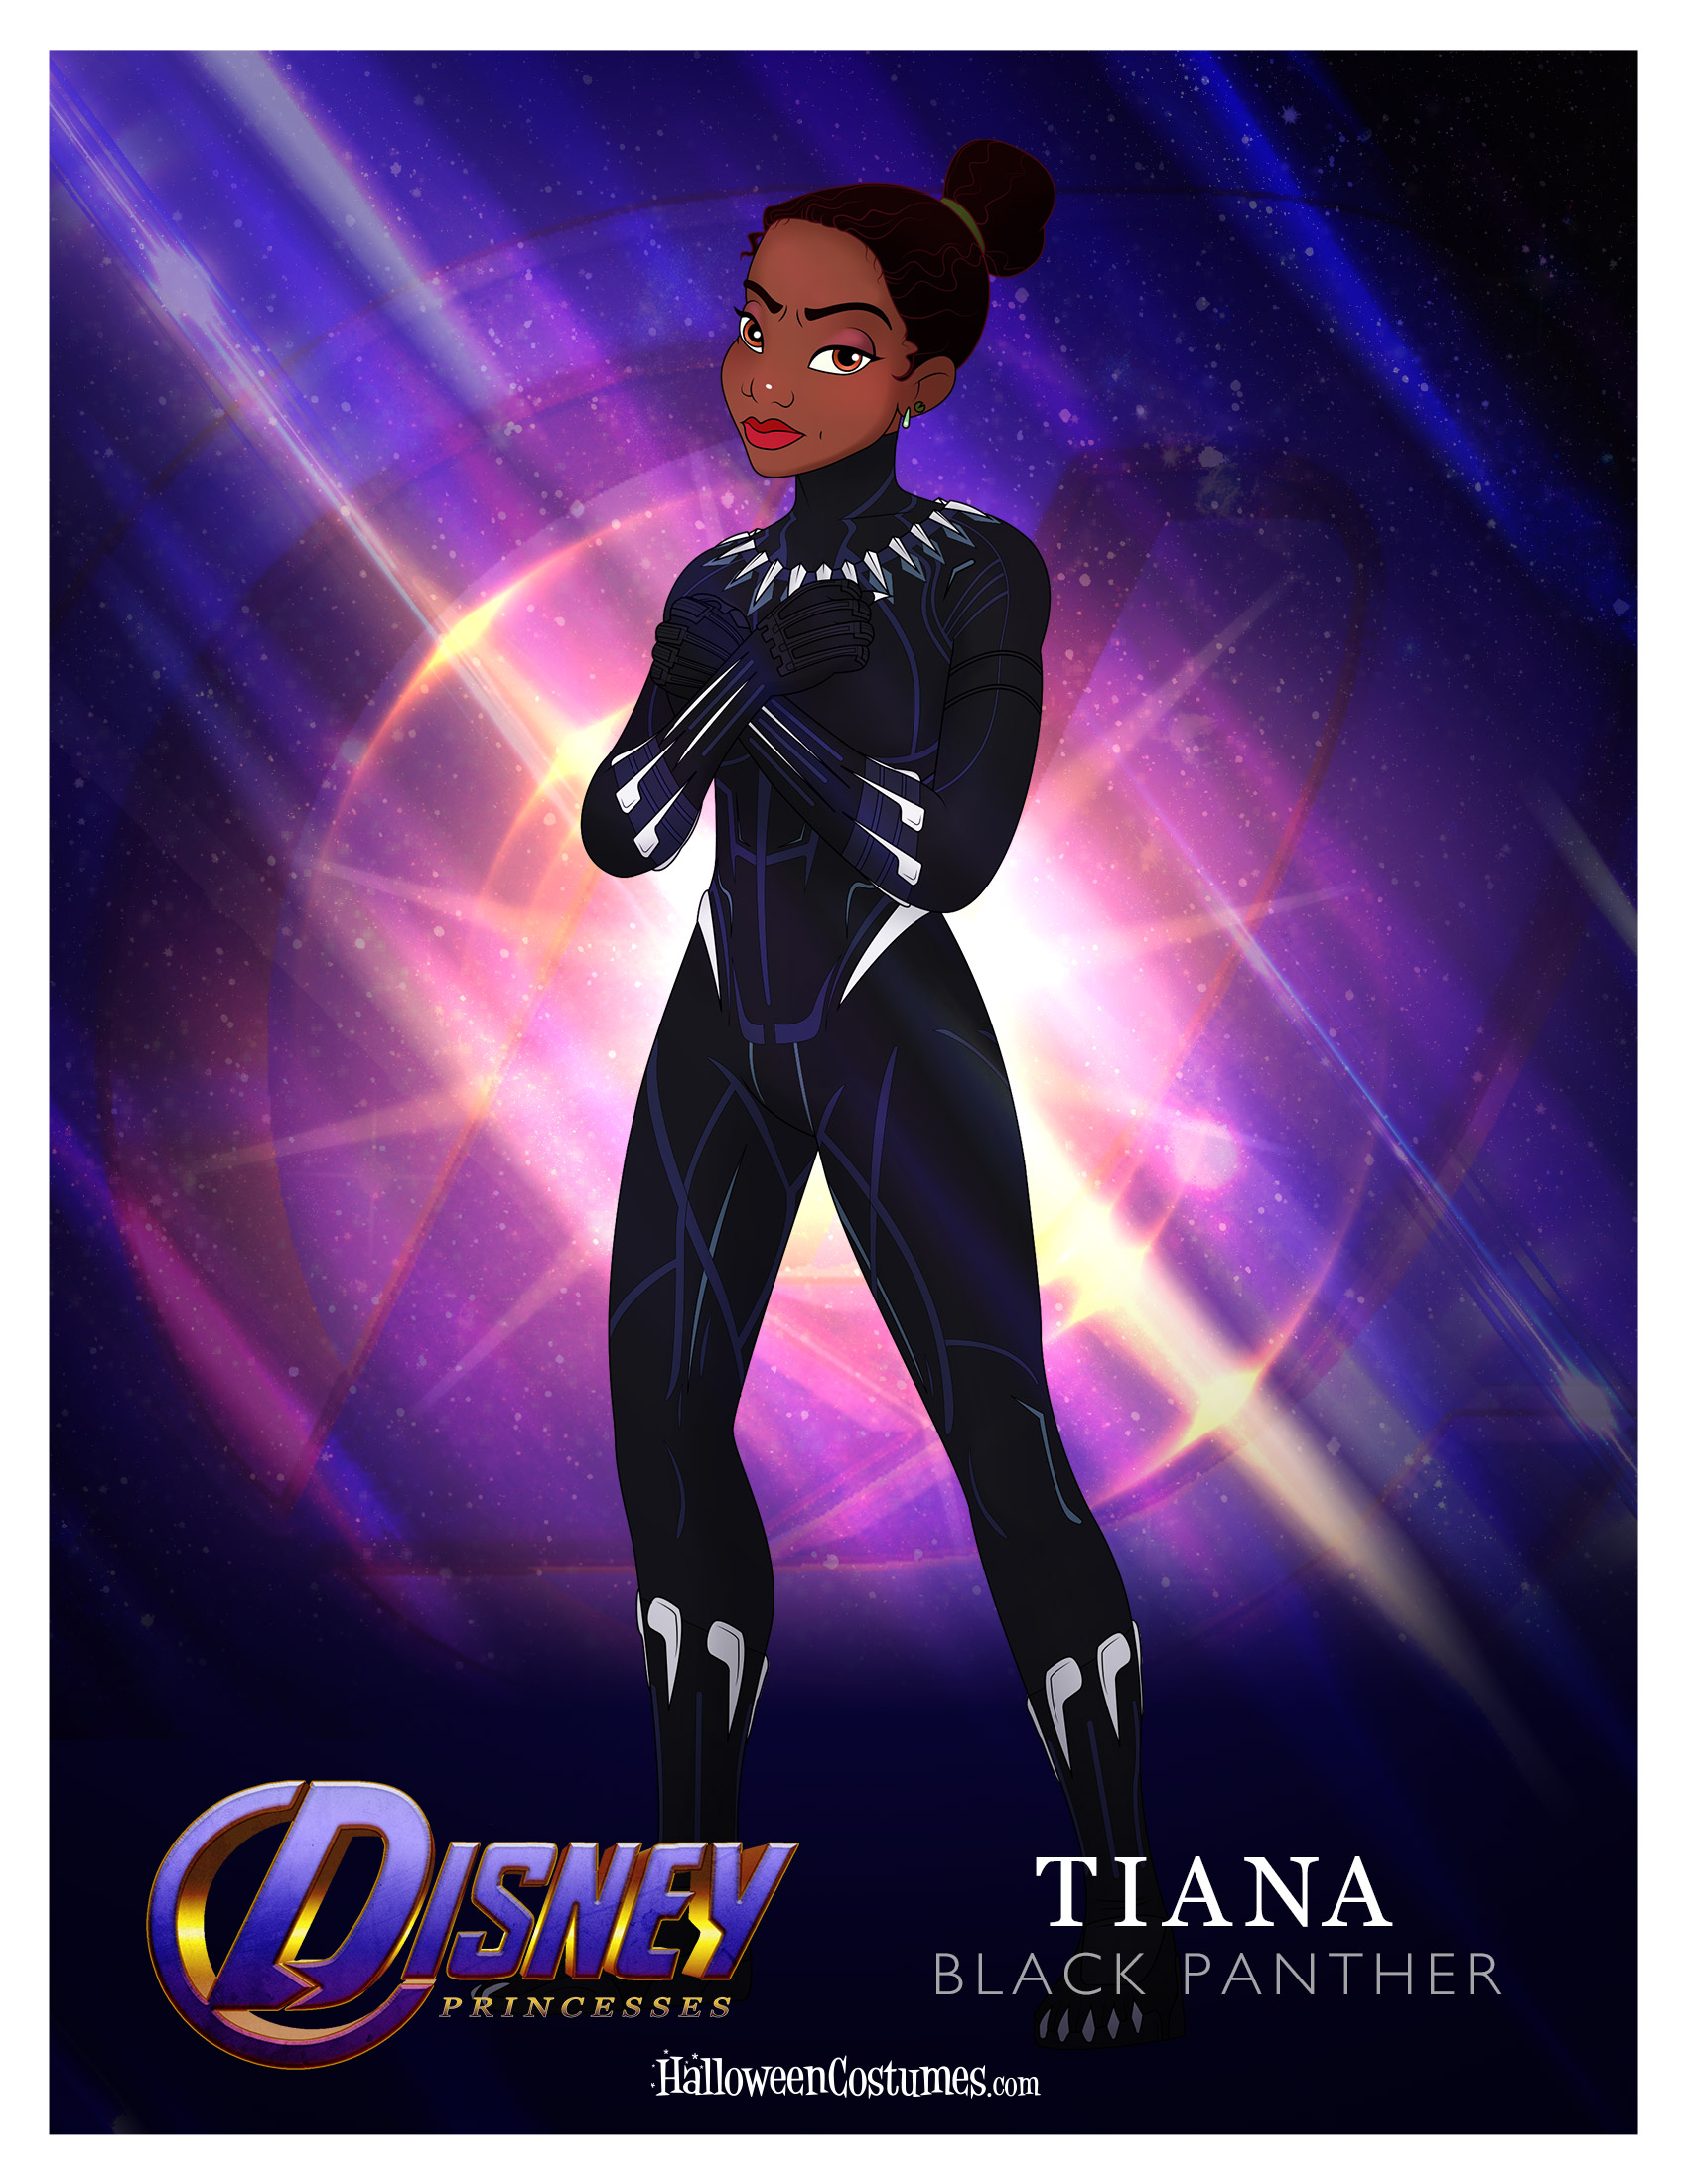 Princes Tiana as Black Panther